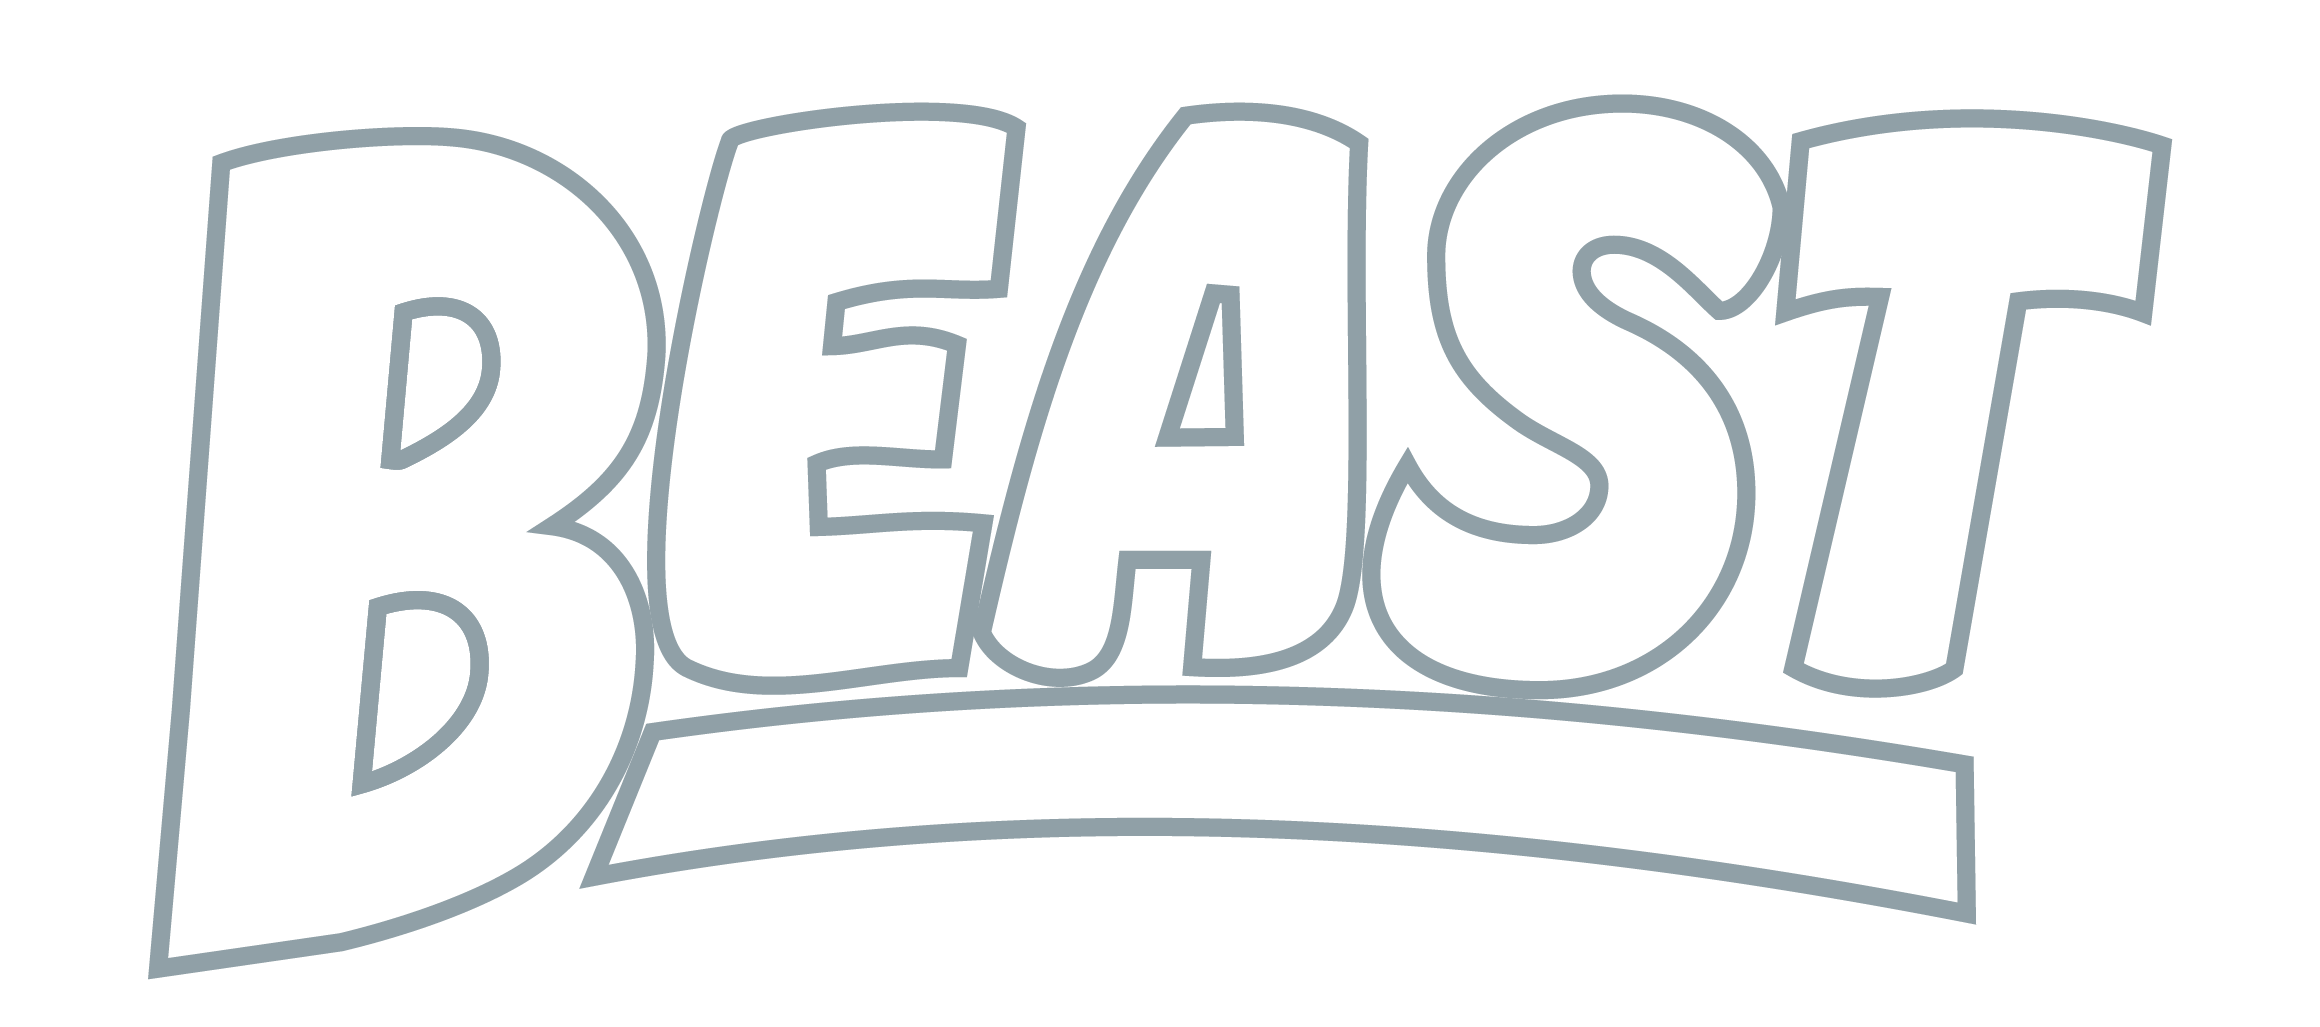 BEAST_Logo_DuskyBlue-1.png